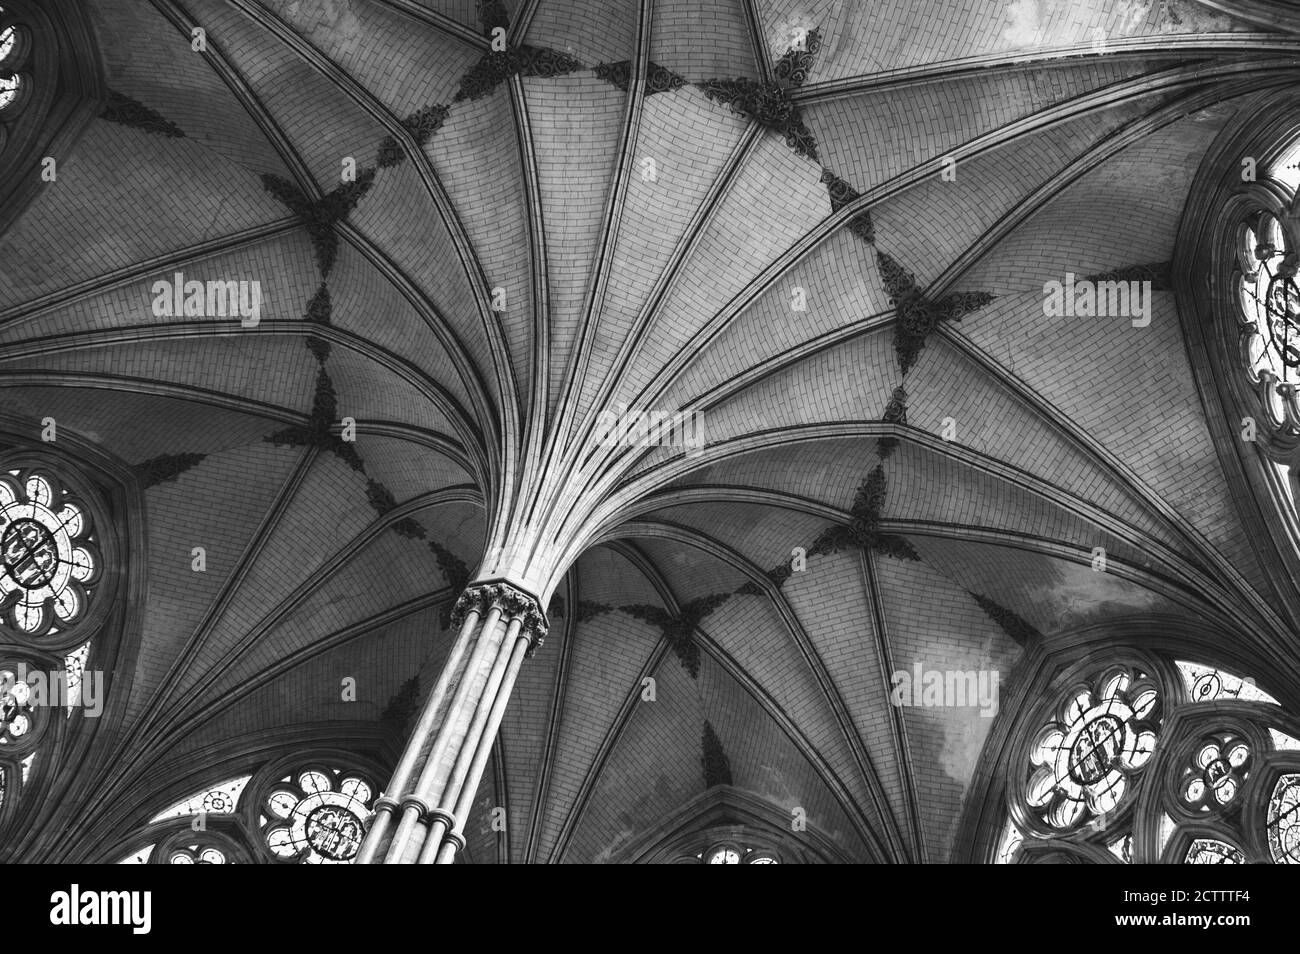 SALISBURY, Großbritannien - 25. AUGUST 2017: Wunderschöne Deckenventilator und Buntglasfenster in der Salisbury Cathedral in England. Schwarzweiß-Foto. Stockfoto